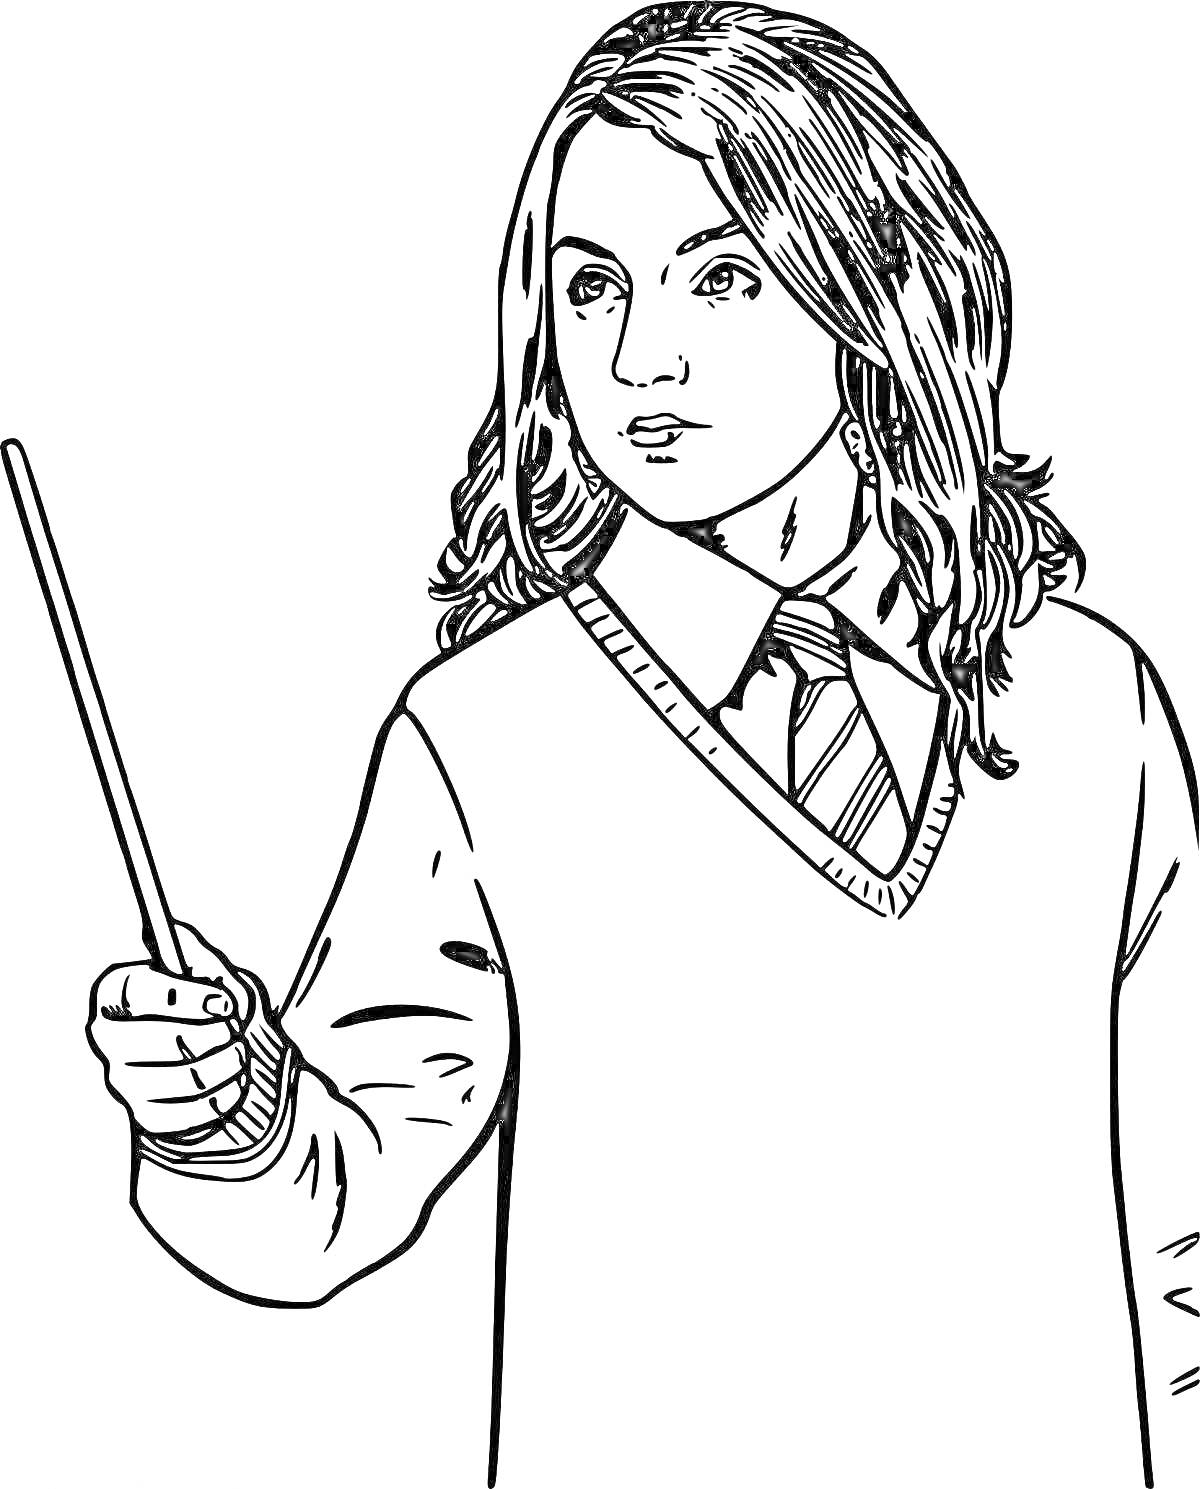 РаскраскаДевочка с длинными волосами, одетая в свитер с галстуком, держащая палочку в вытянутой руке